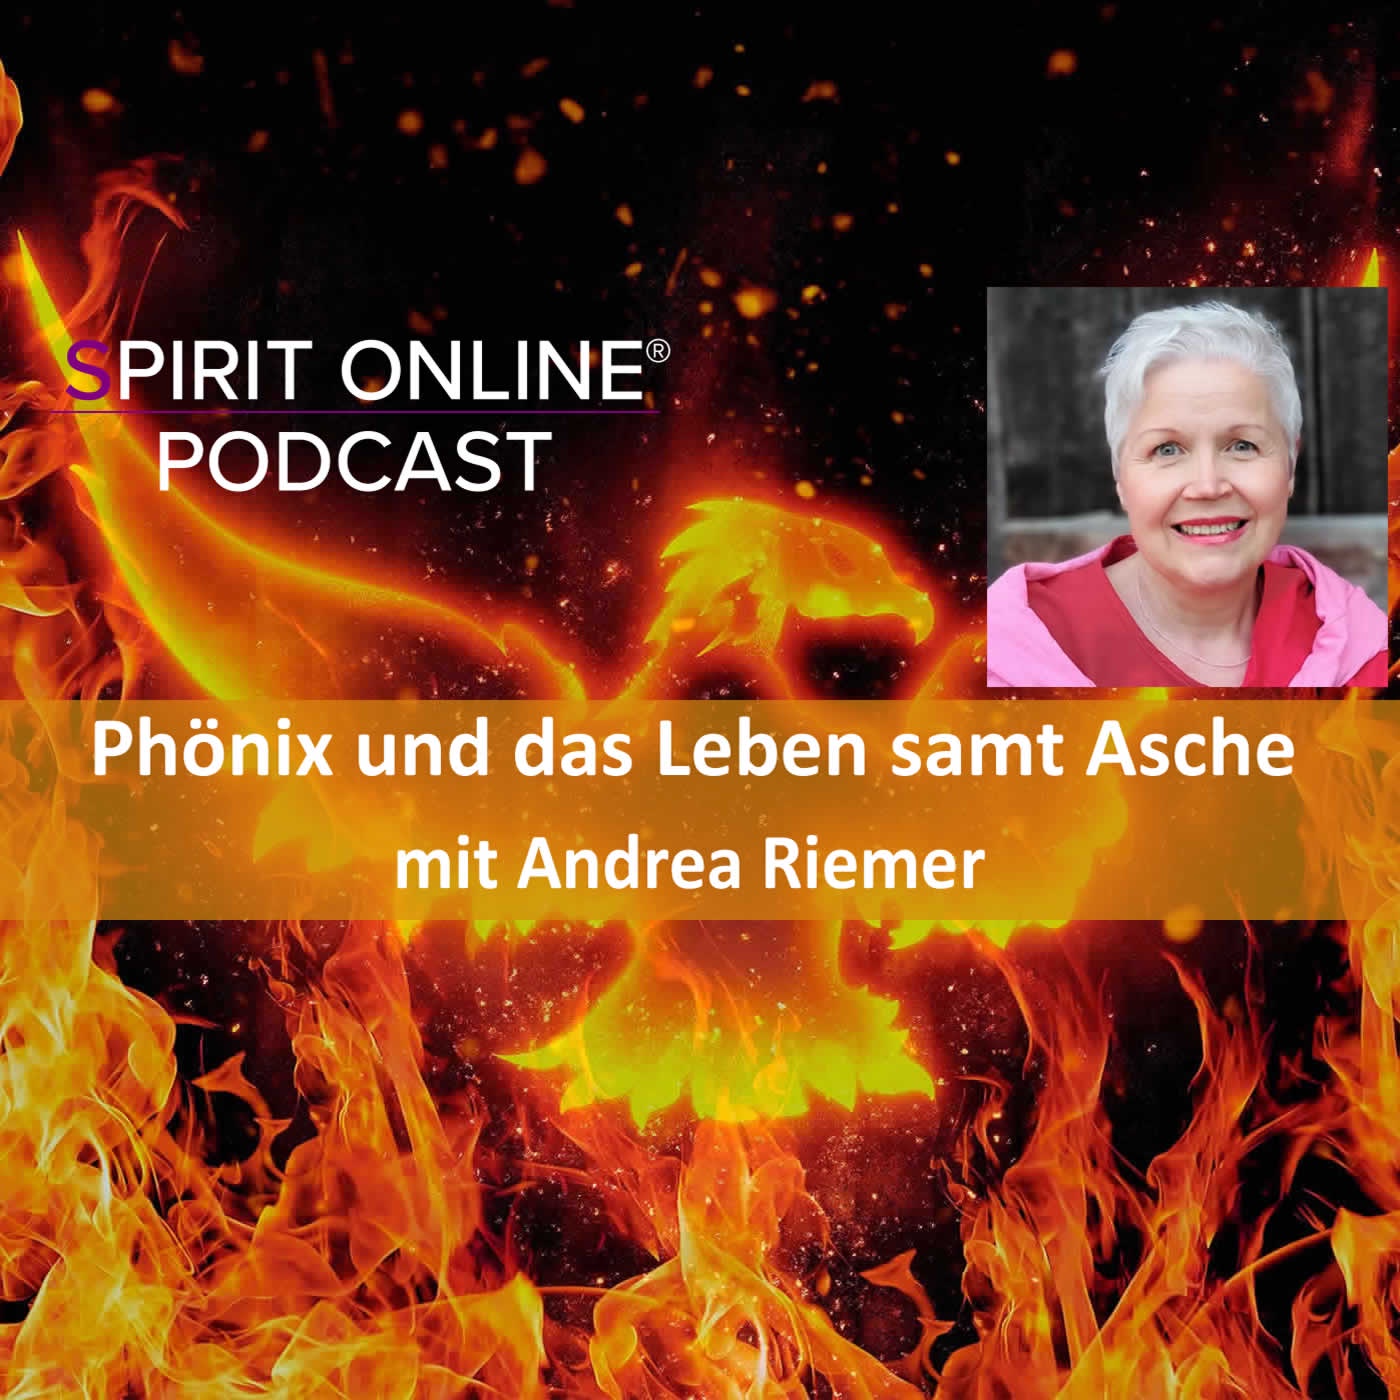 Phönix und das Leben samt Asche Podcast mit Andrea